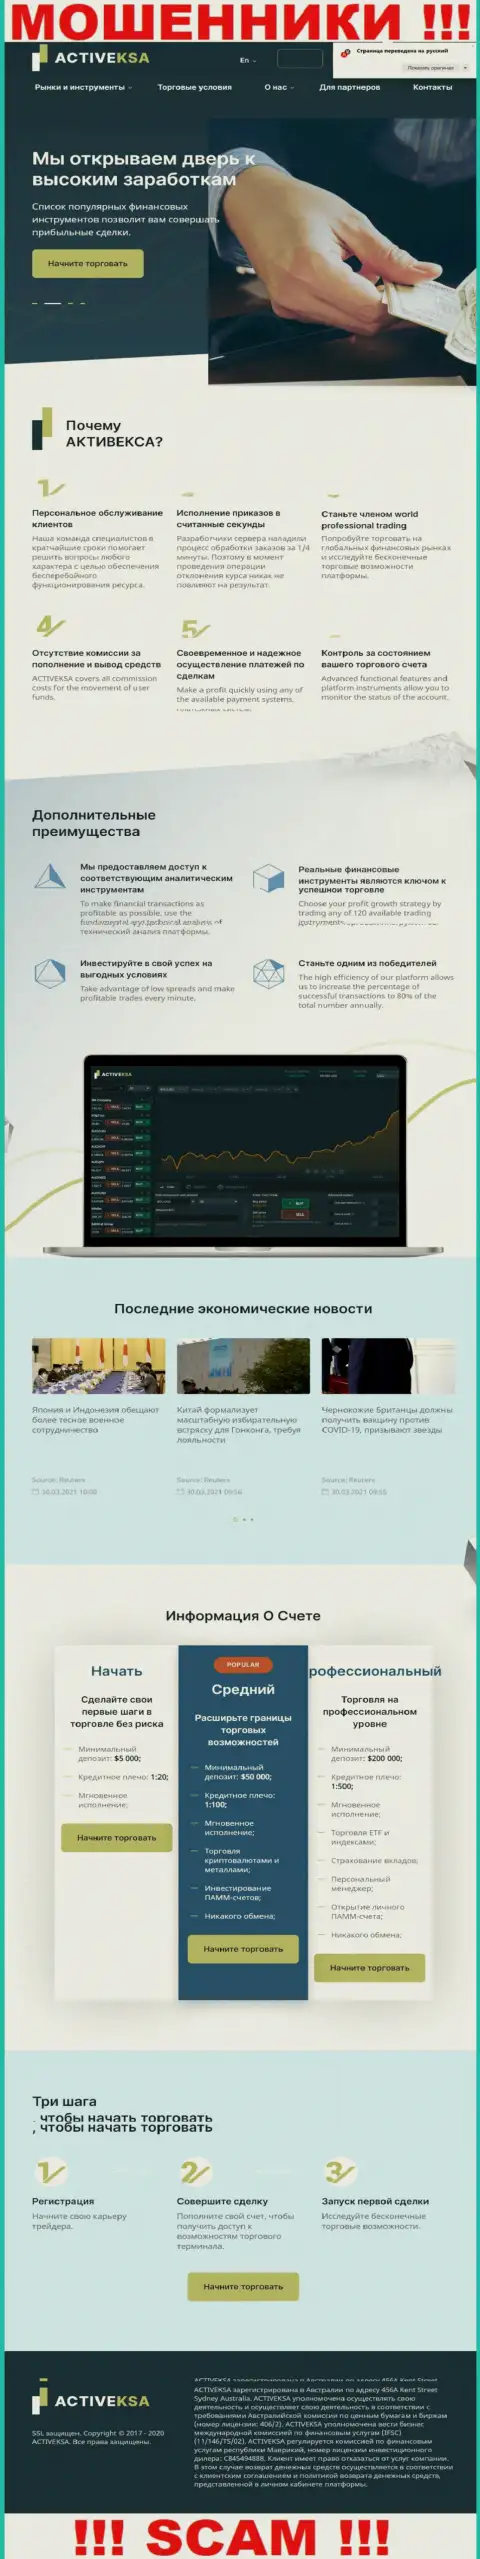 Активекса Ком - это официальный портал мошенников Activeksa Com